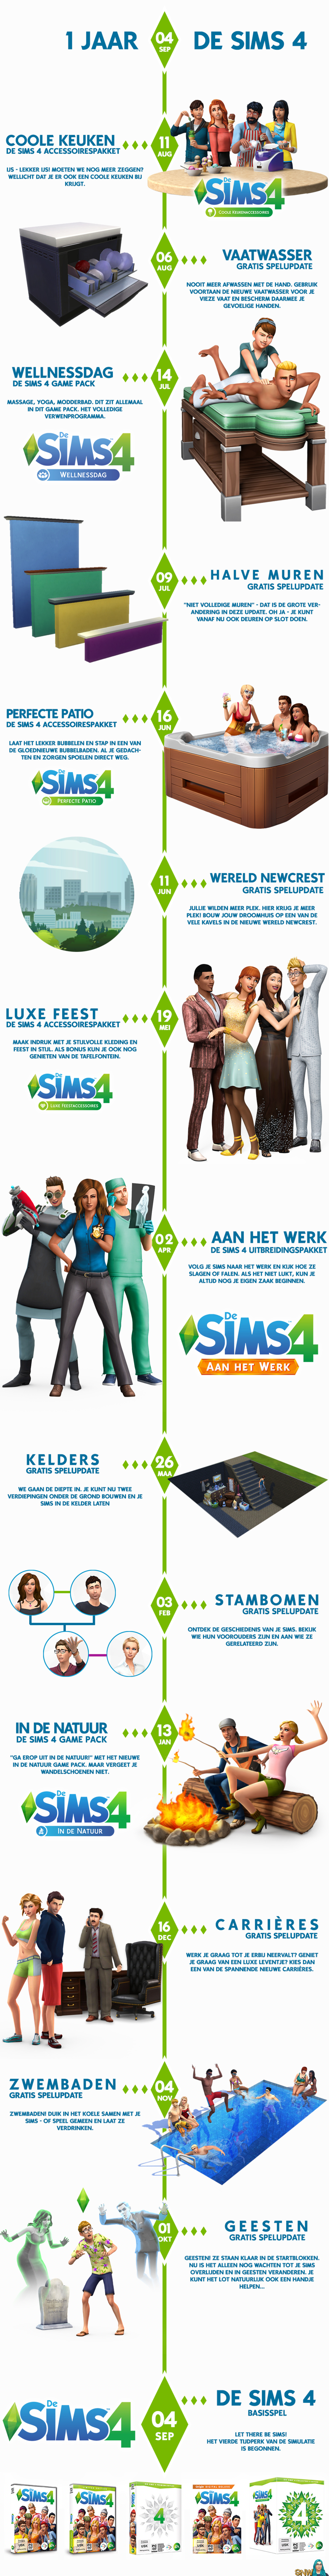 De Sims 4 bestaat 1 jaar!